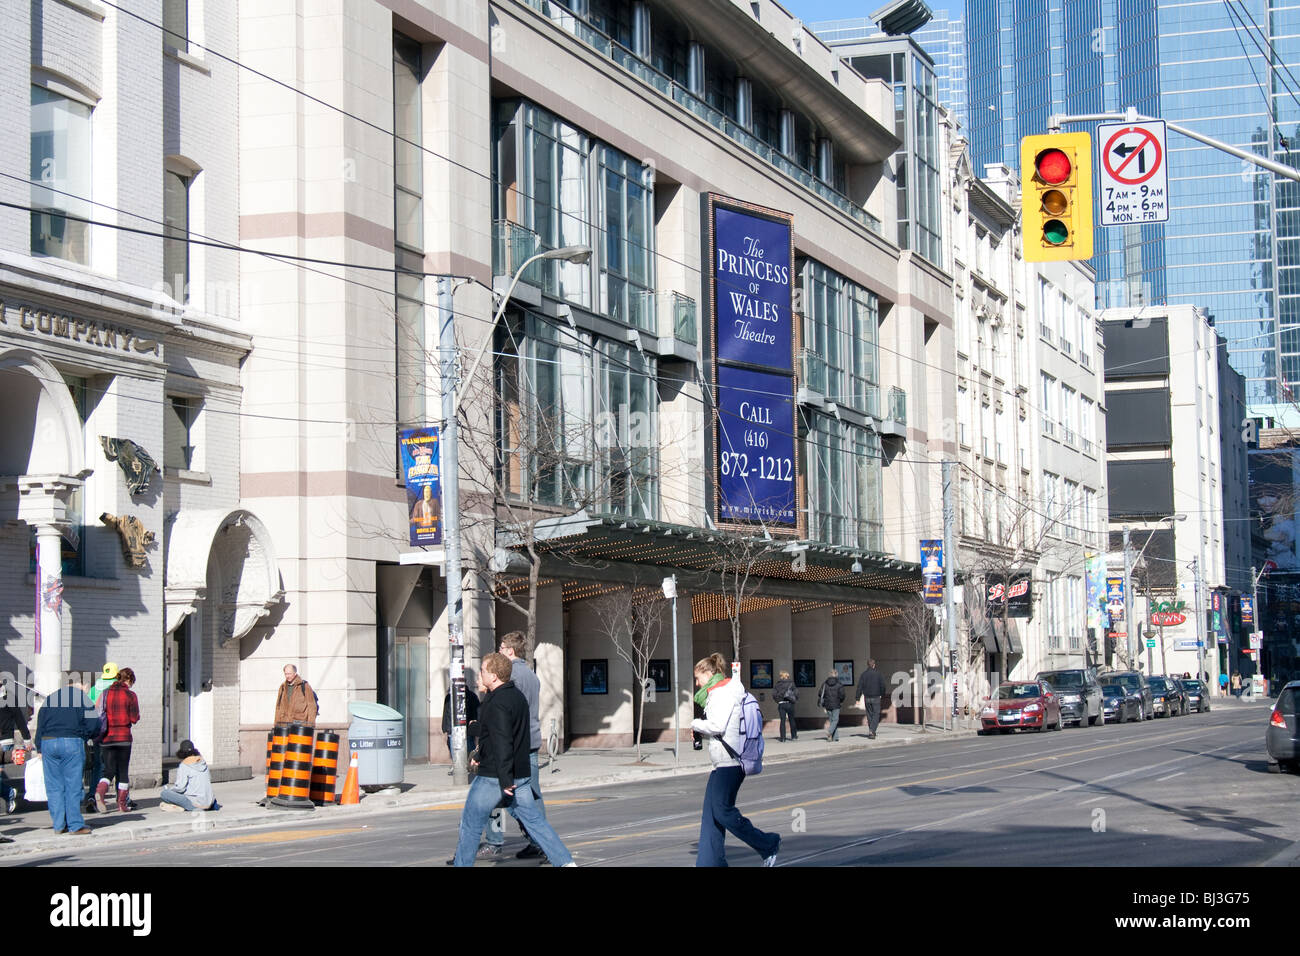 Le Princess of Wales Theatre est un théâtre de 2000 places situé au cœur du quartier des divertissements de Toronto Banque D'Images